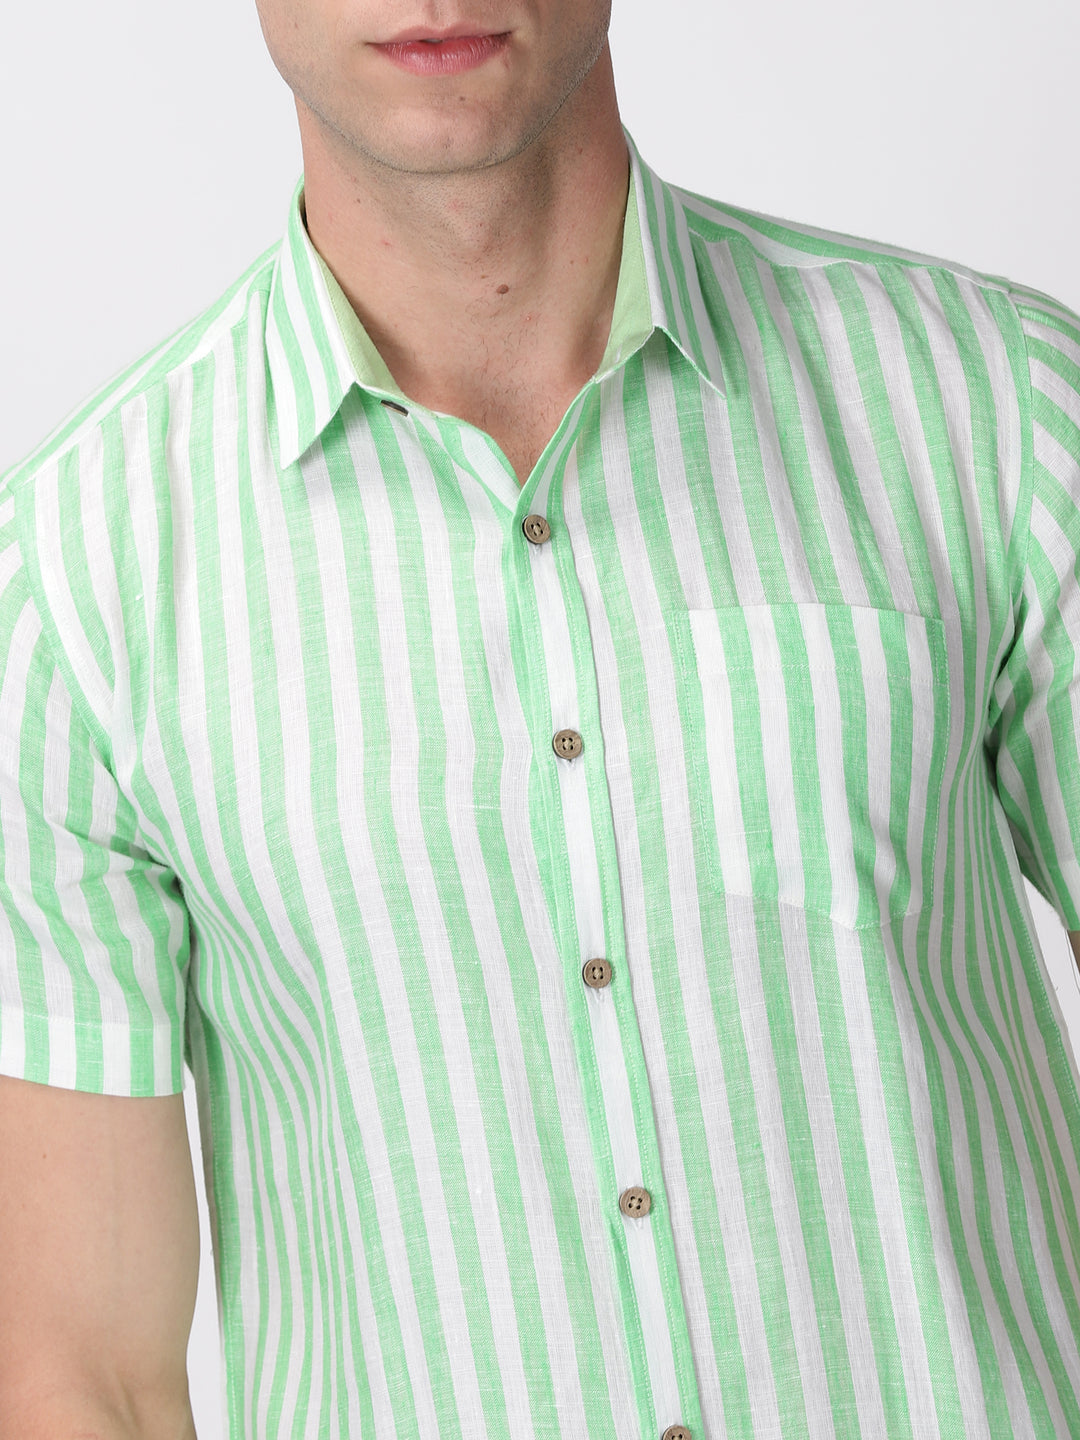 Arthur - Pure Linen Short Sleeve Shirt - Awning Green Stripes